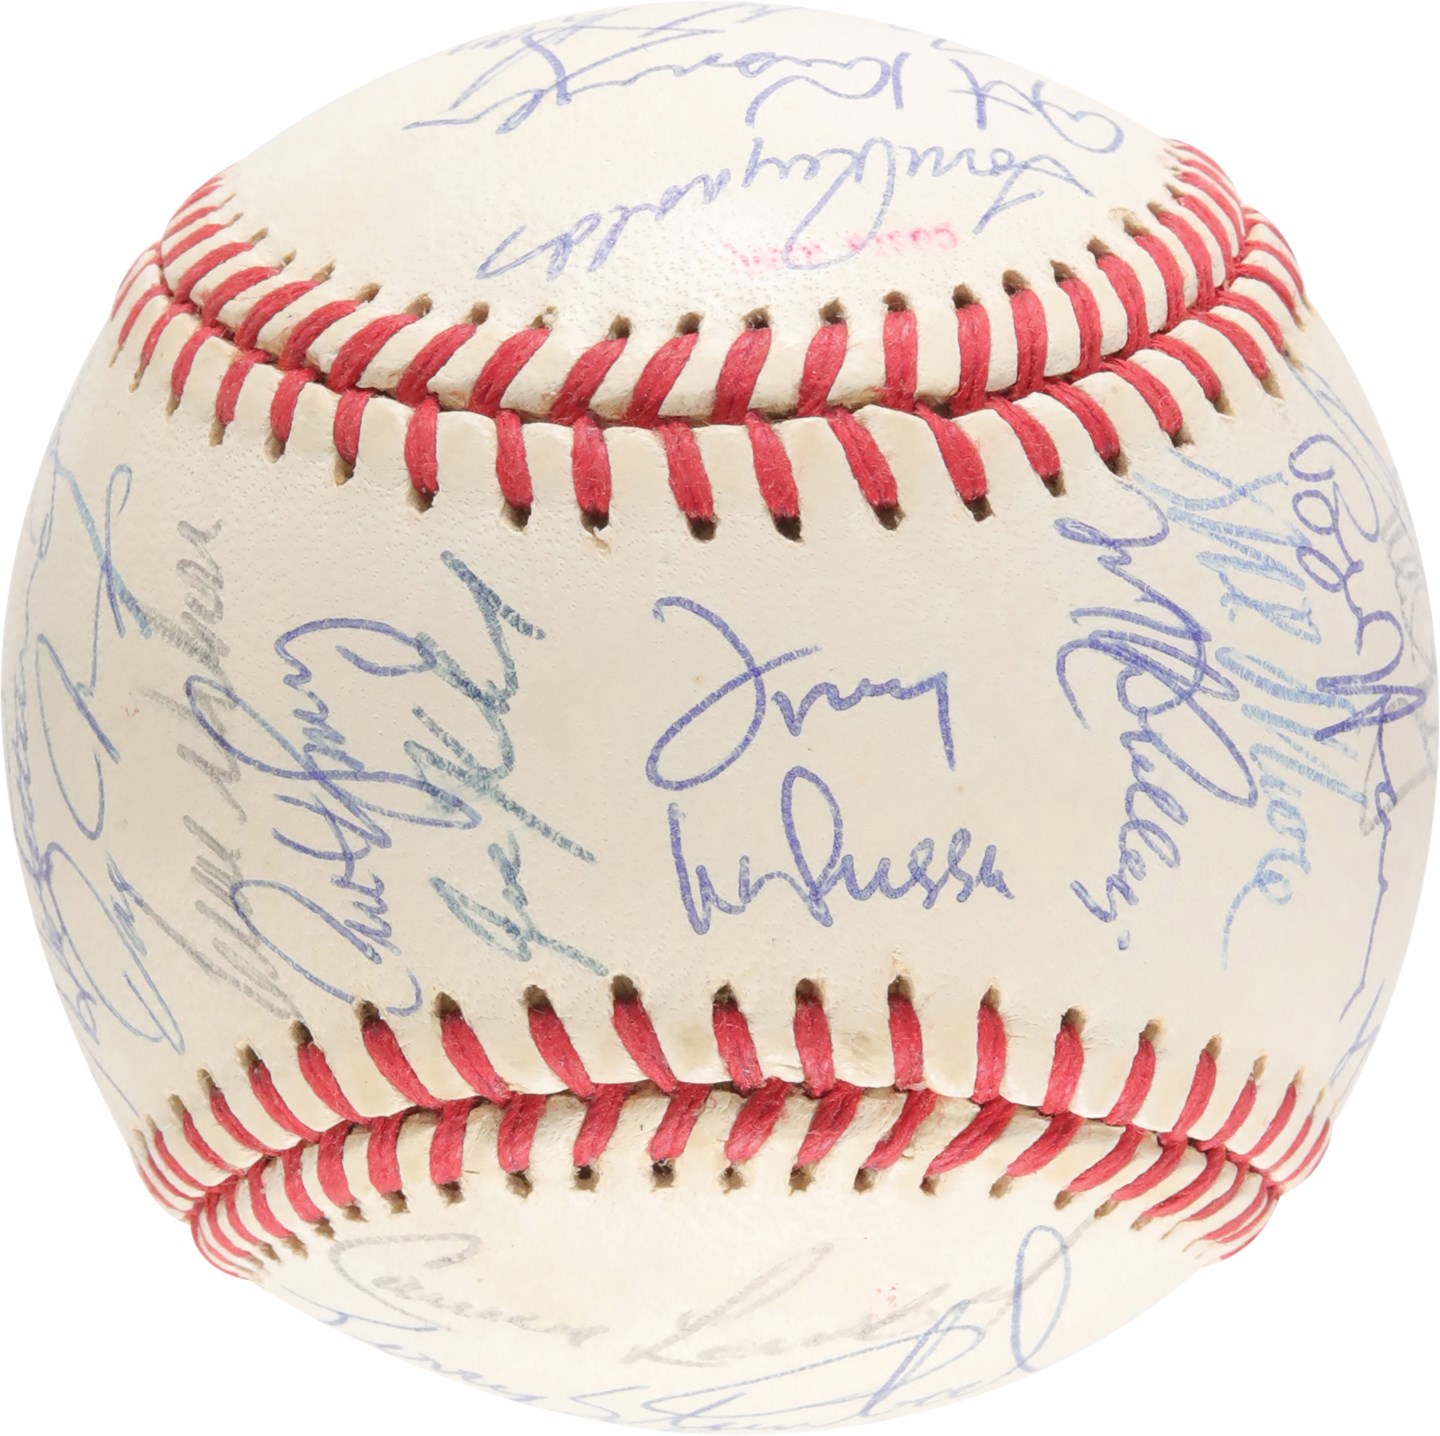 - High-Grade 1990 Oakland A's World Series Team-Signed Baseball